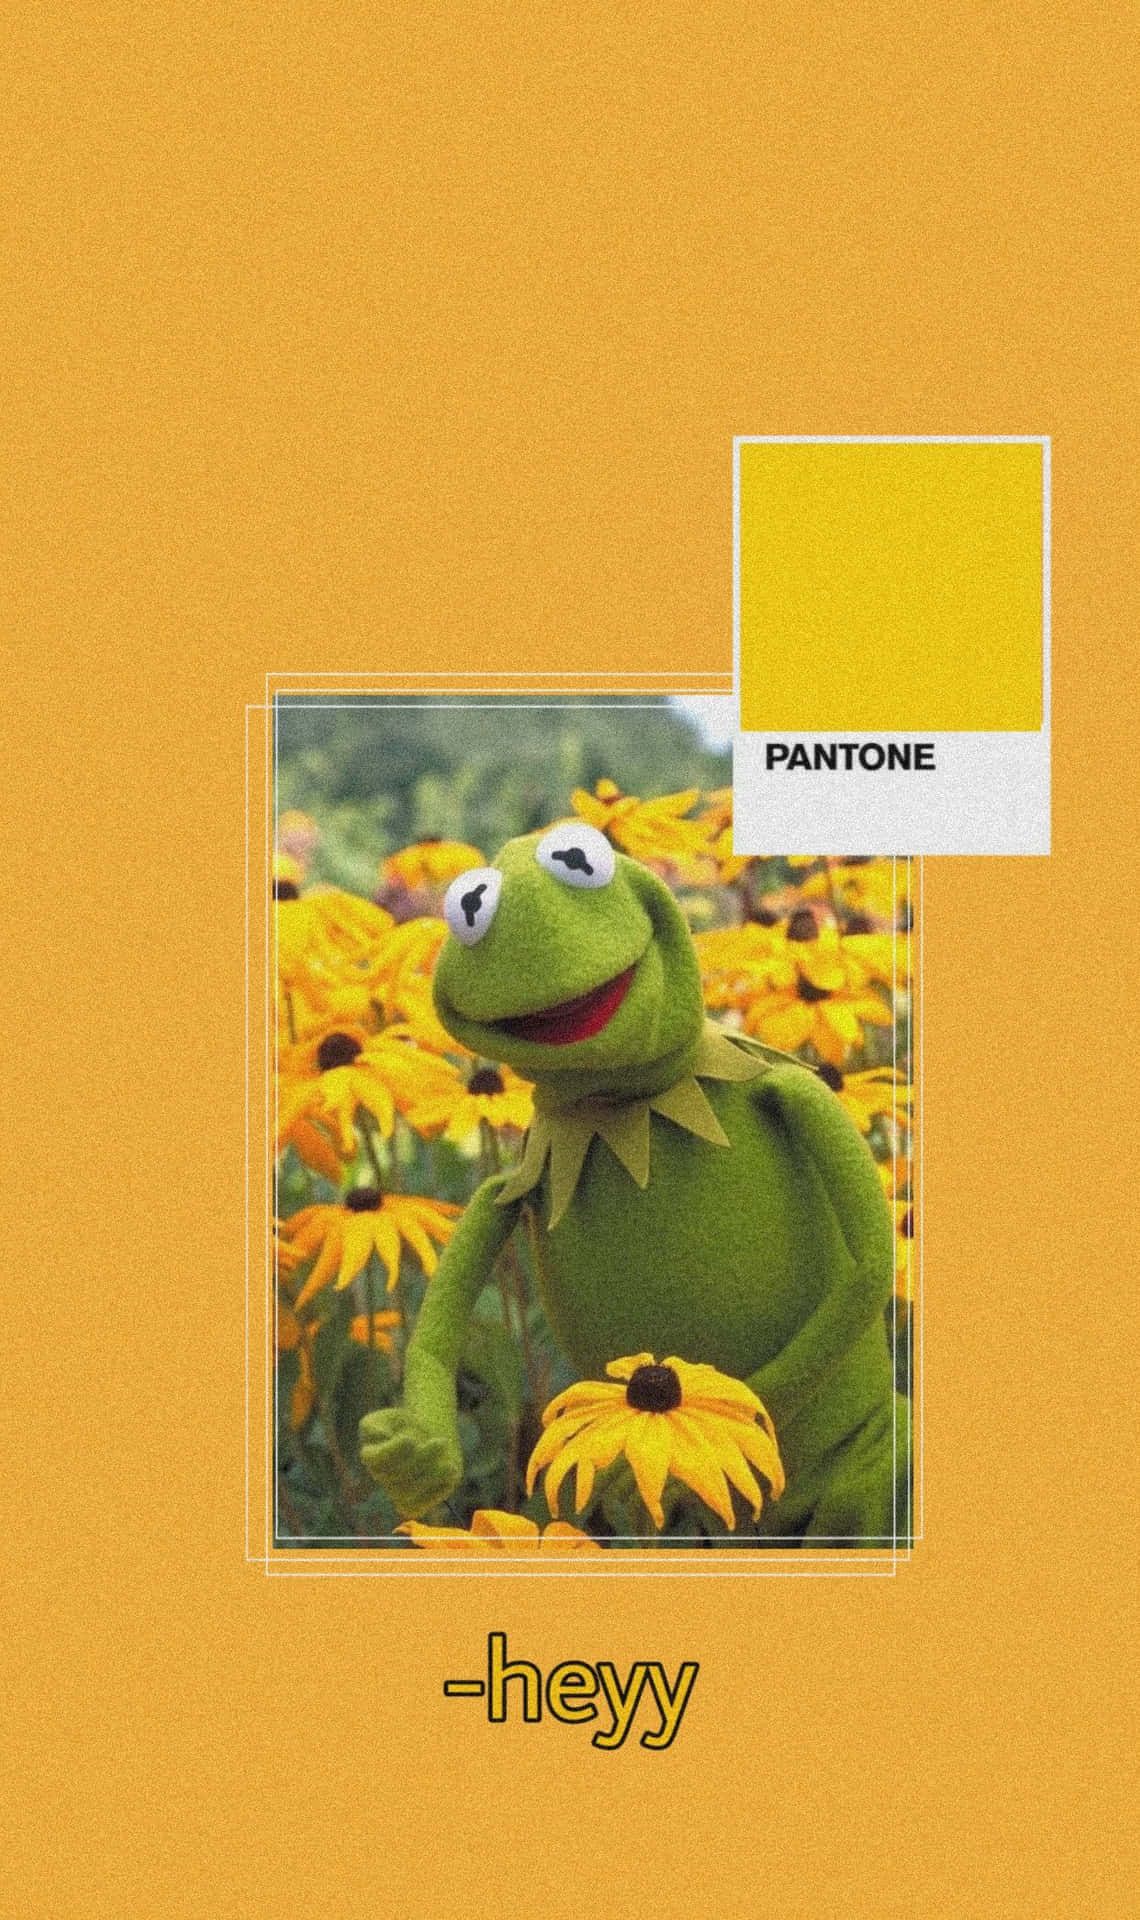 Download Aesthetic Kermit Wallpaper